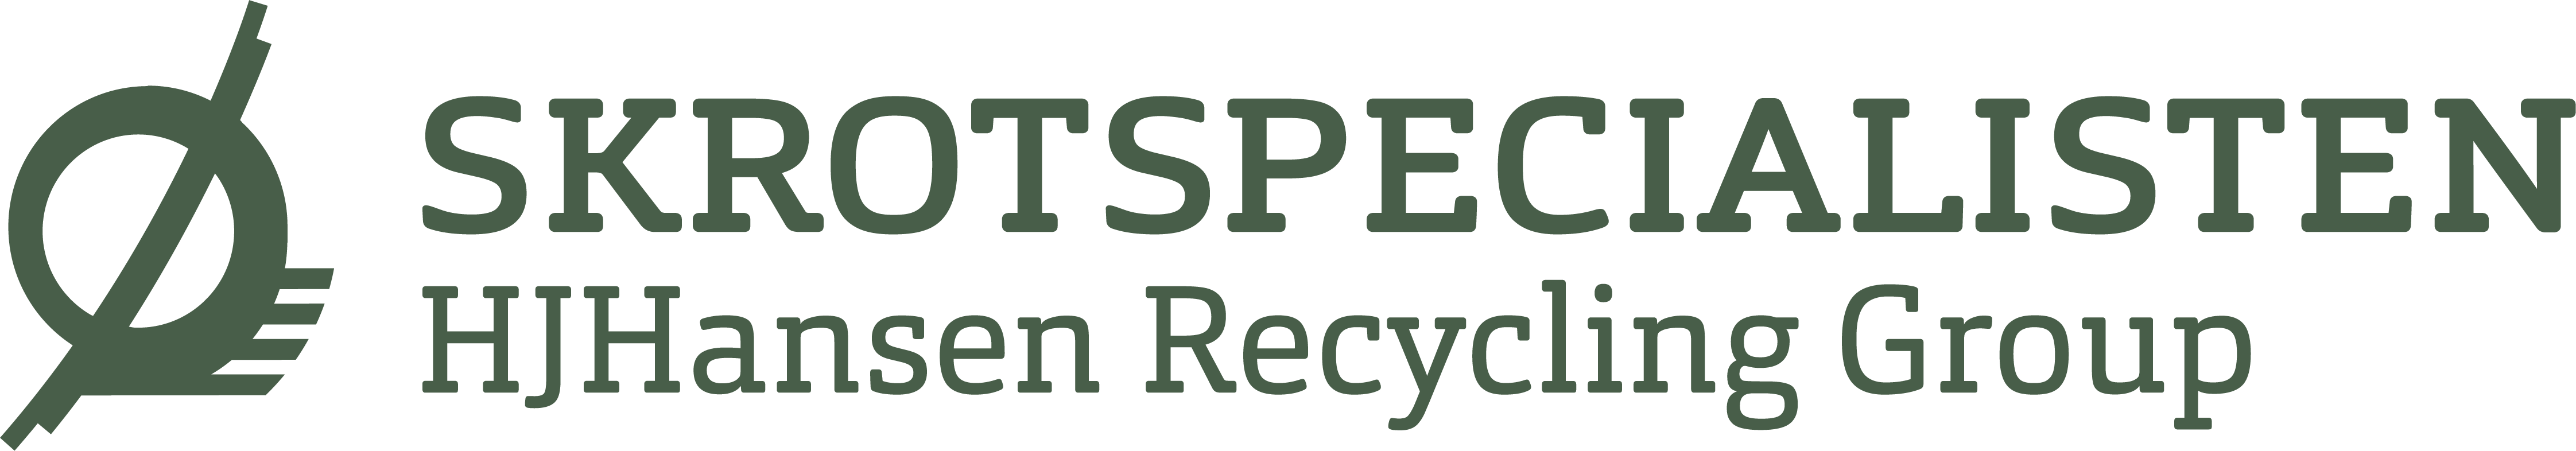 Skrotspecialisten logo i grøn